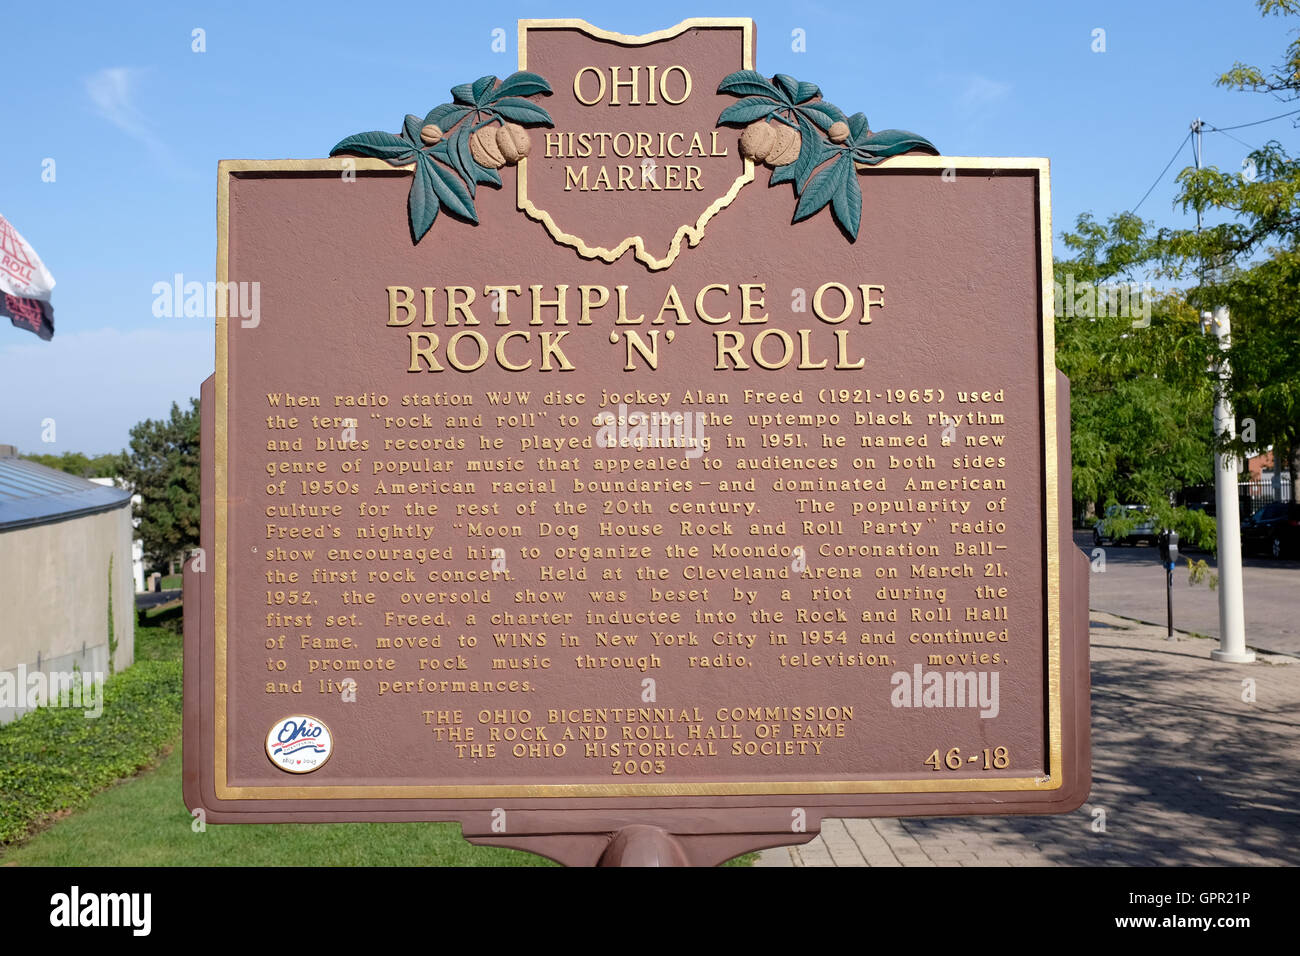 Ohio marcatore storico - Luogo di nascita del Rock and Roll - Cleveland Ohio Foto Stock